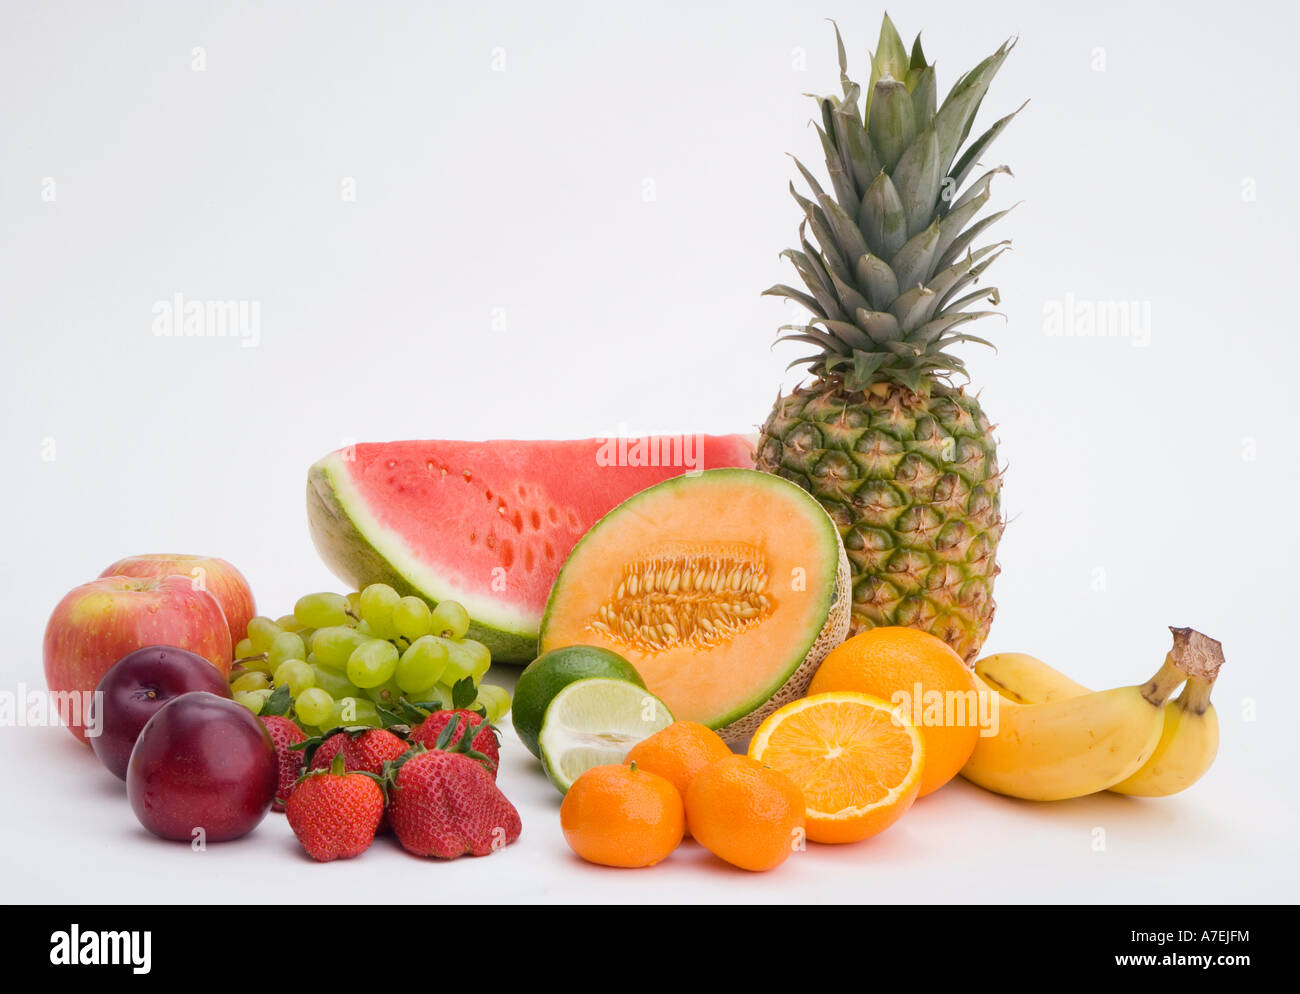 Varietà di frutta : cocomero, mele, banana, uva, fragole, prugne, cantelope, arance, limette Ananas Foto Stock